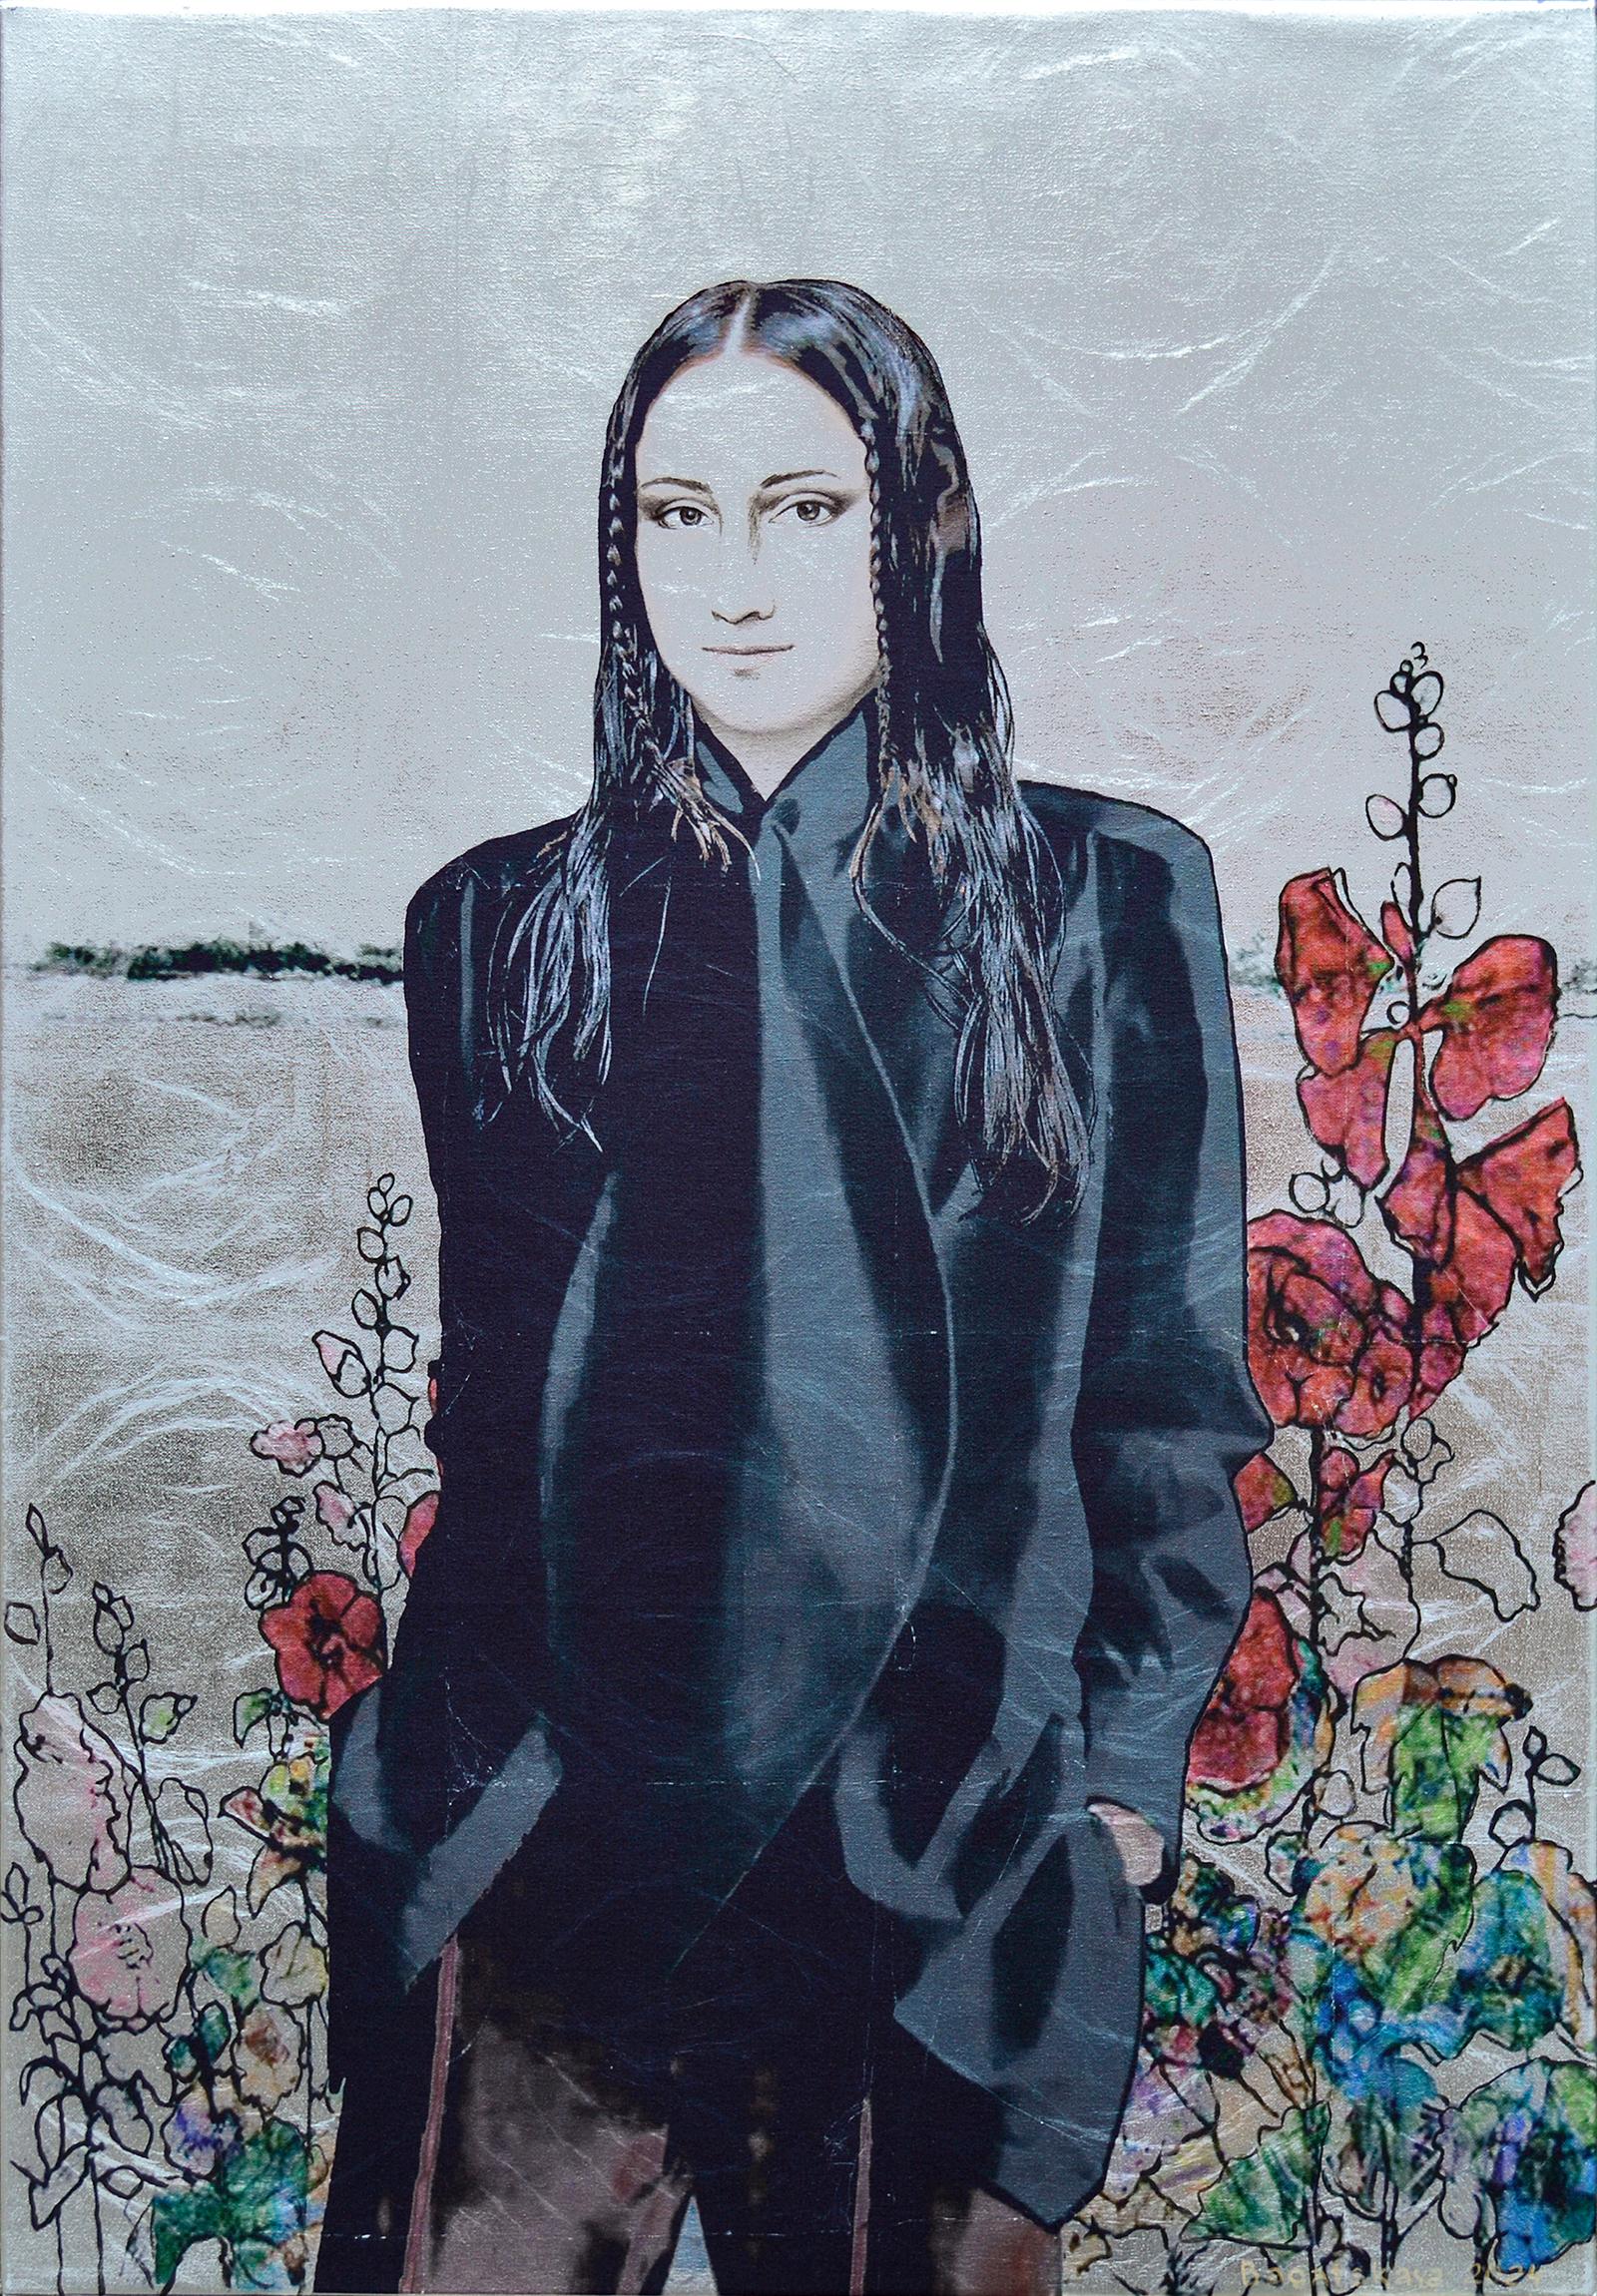 Zeitgenössisches gedrucktes Porträt "The FIeld among the Flowers" (Im Feld zwischen den Blumen)